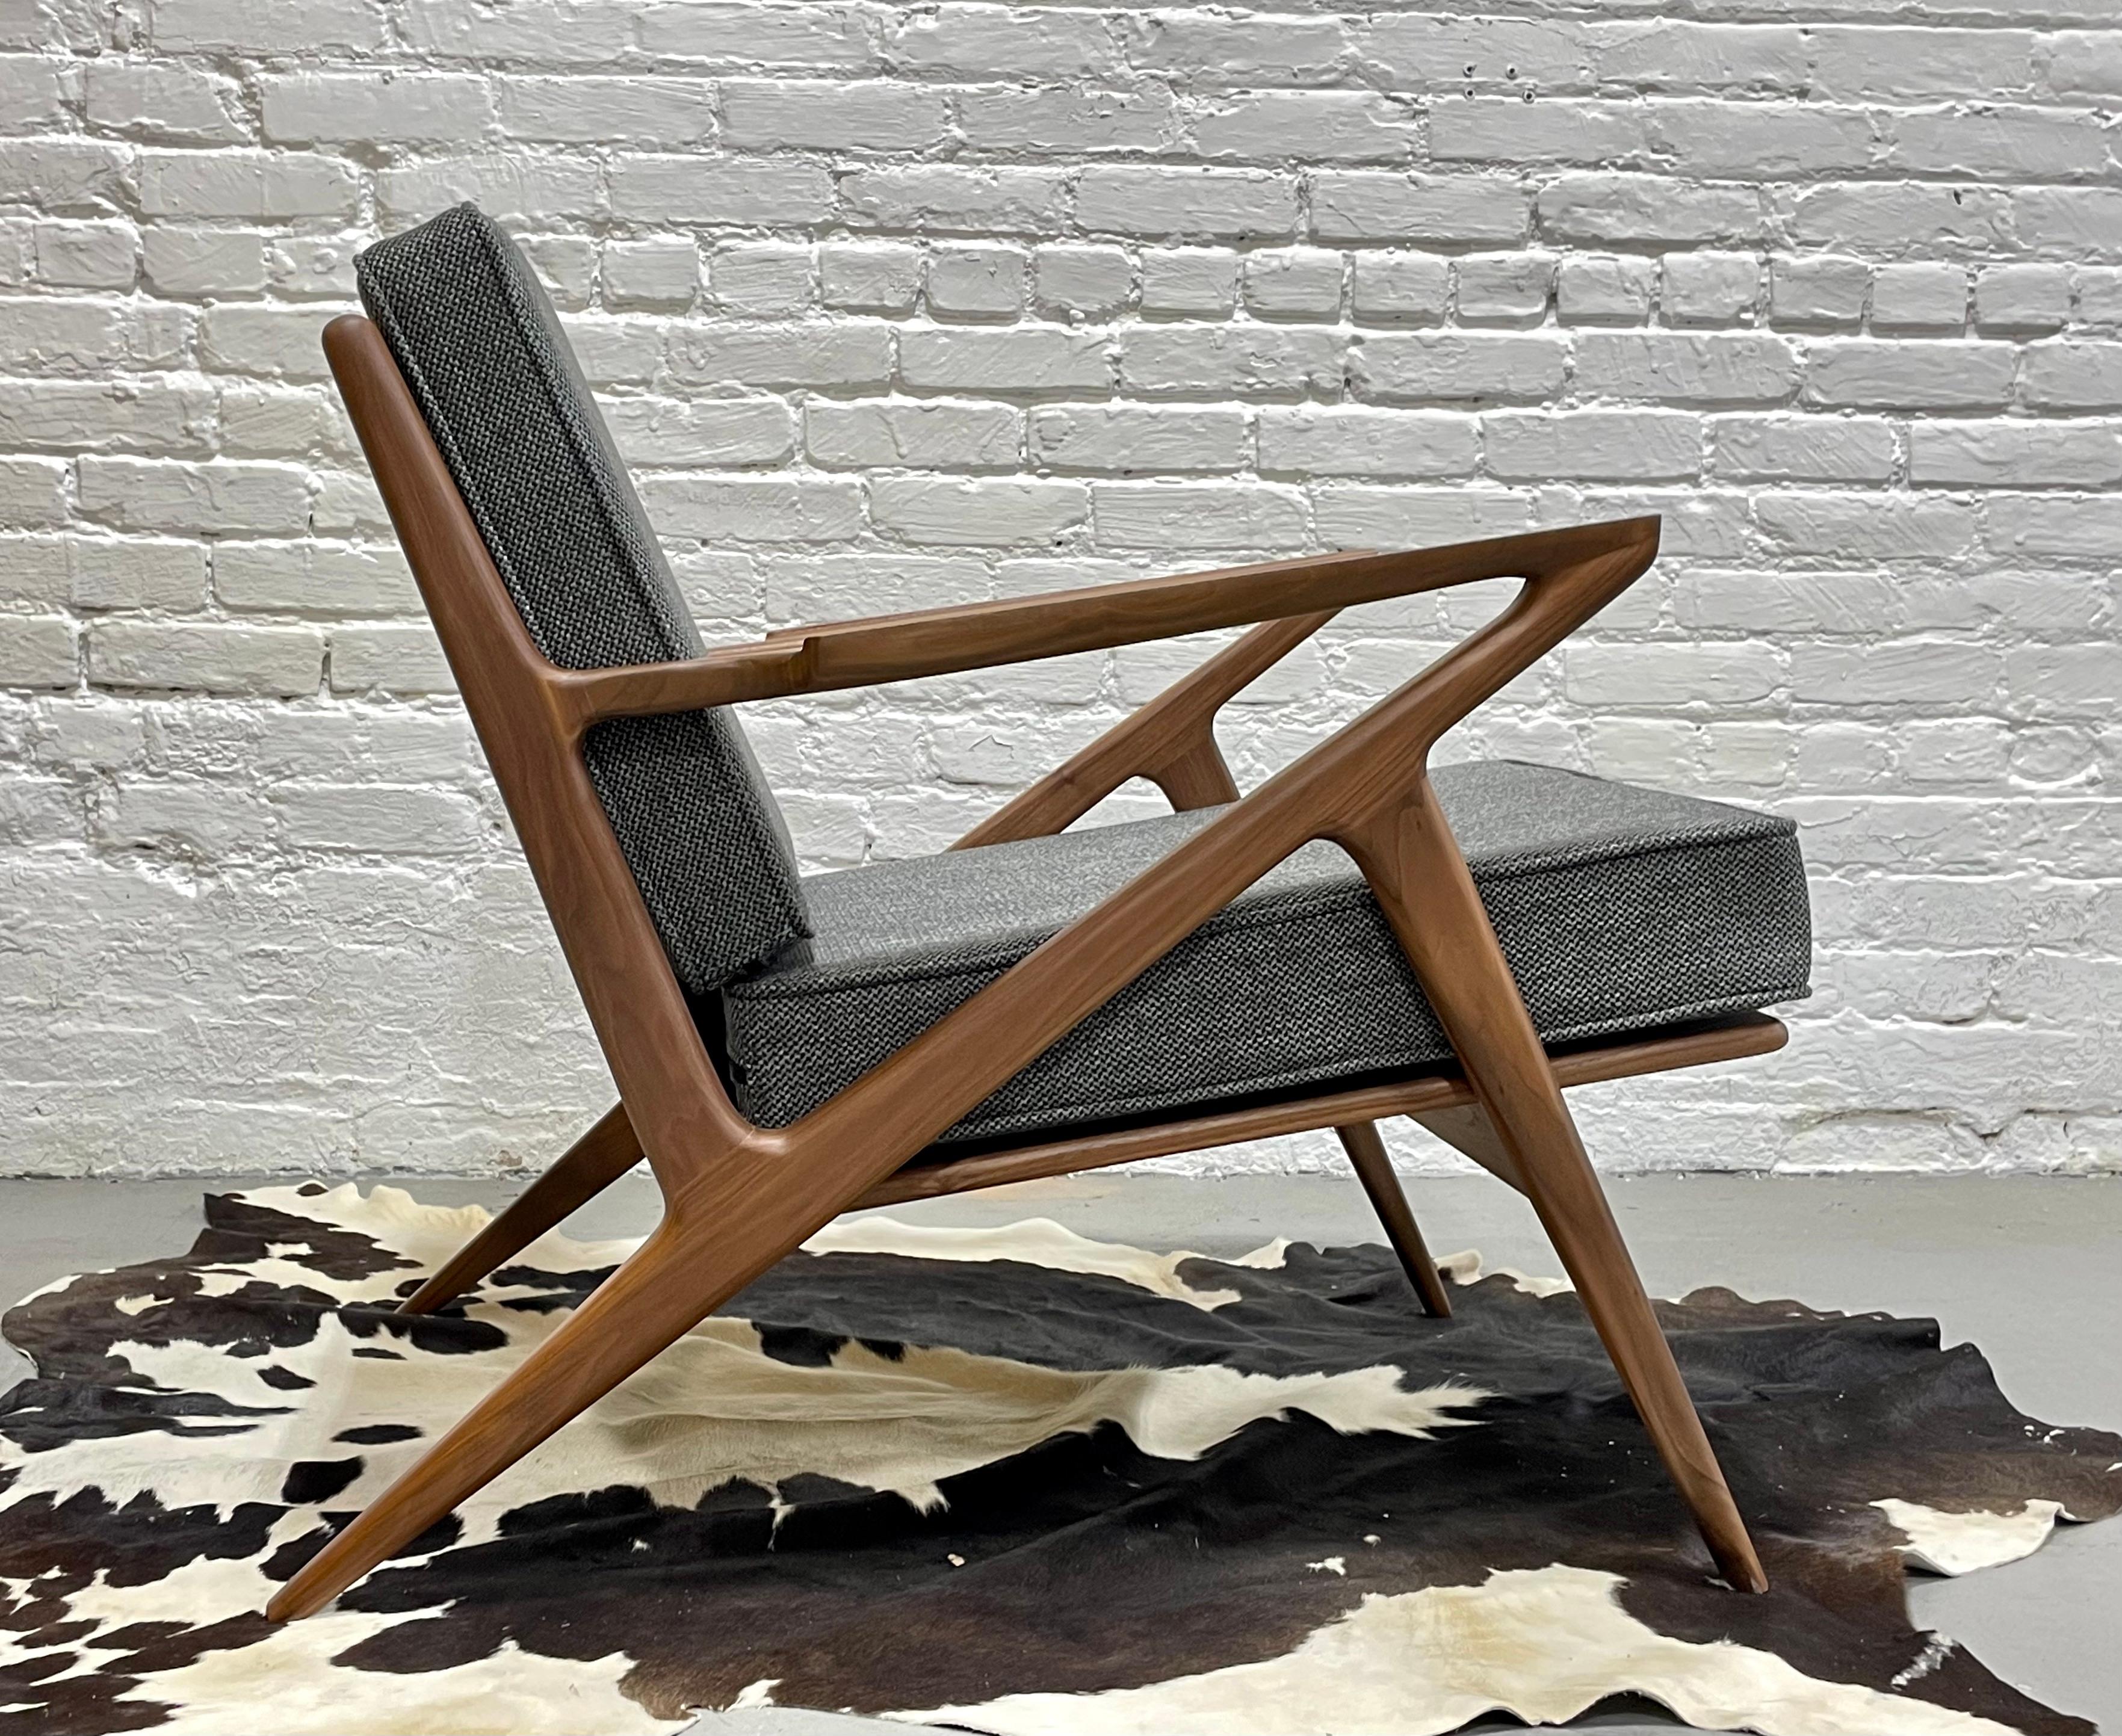 Loungesessel im Stil des Mid Century Modern, in aufwändiger Handarbeit aus massivem amerikanischem Nussbaumholz gefertigt und gestaltet. Dieser unglaubliche Stuhl bietet eine Fülle von Designdetails wie skulpturale Armlehnen, dreieckige Rückenlatten